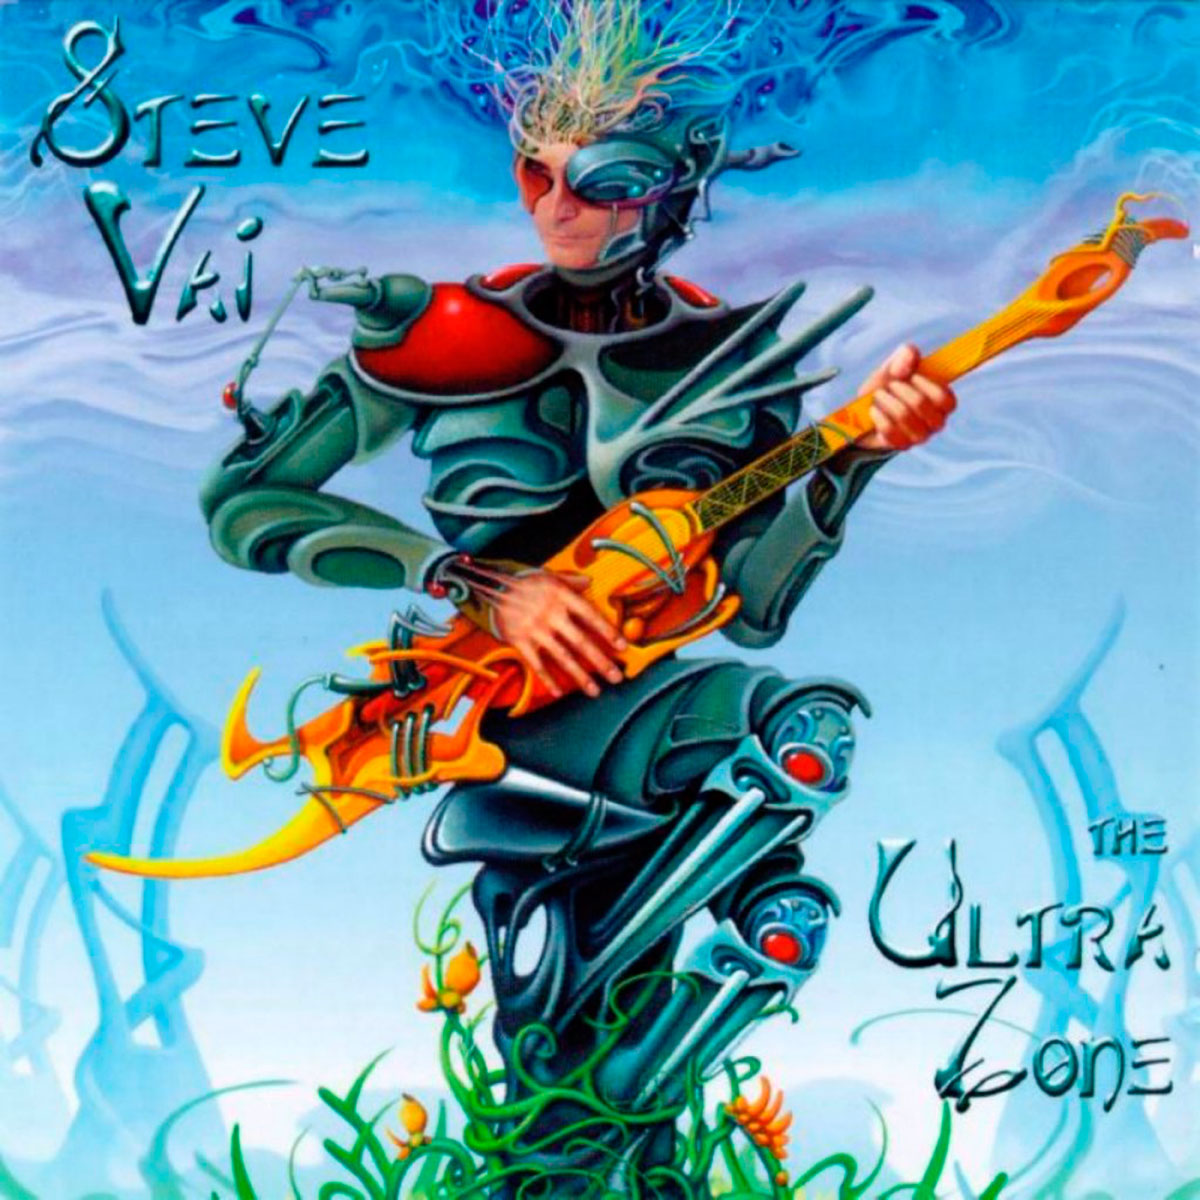 Emerald guitars, Steve Vai Ultra Zone